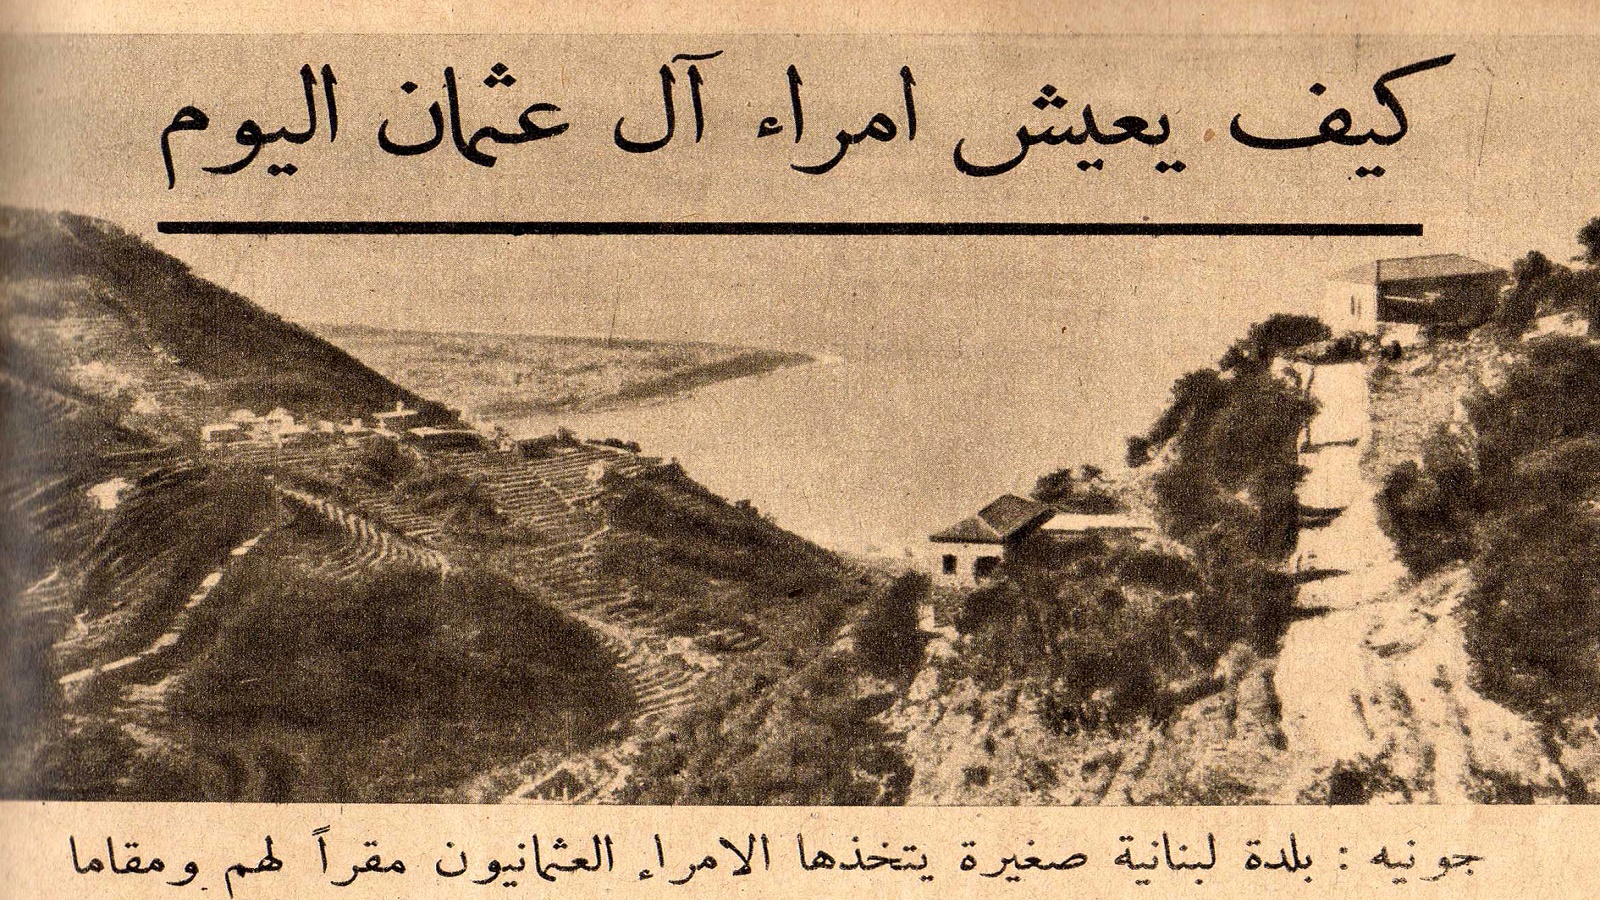 في جونيه، وجد الأمير سليم بن السلطان عبد الحميد المأوى الذين كانوا يبحث عنه"، بعد نفيه سنة 1924.